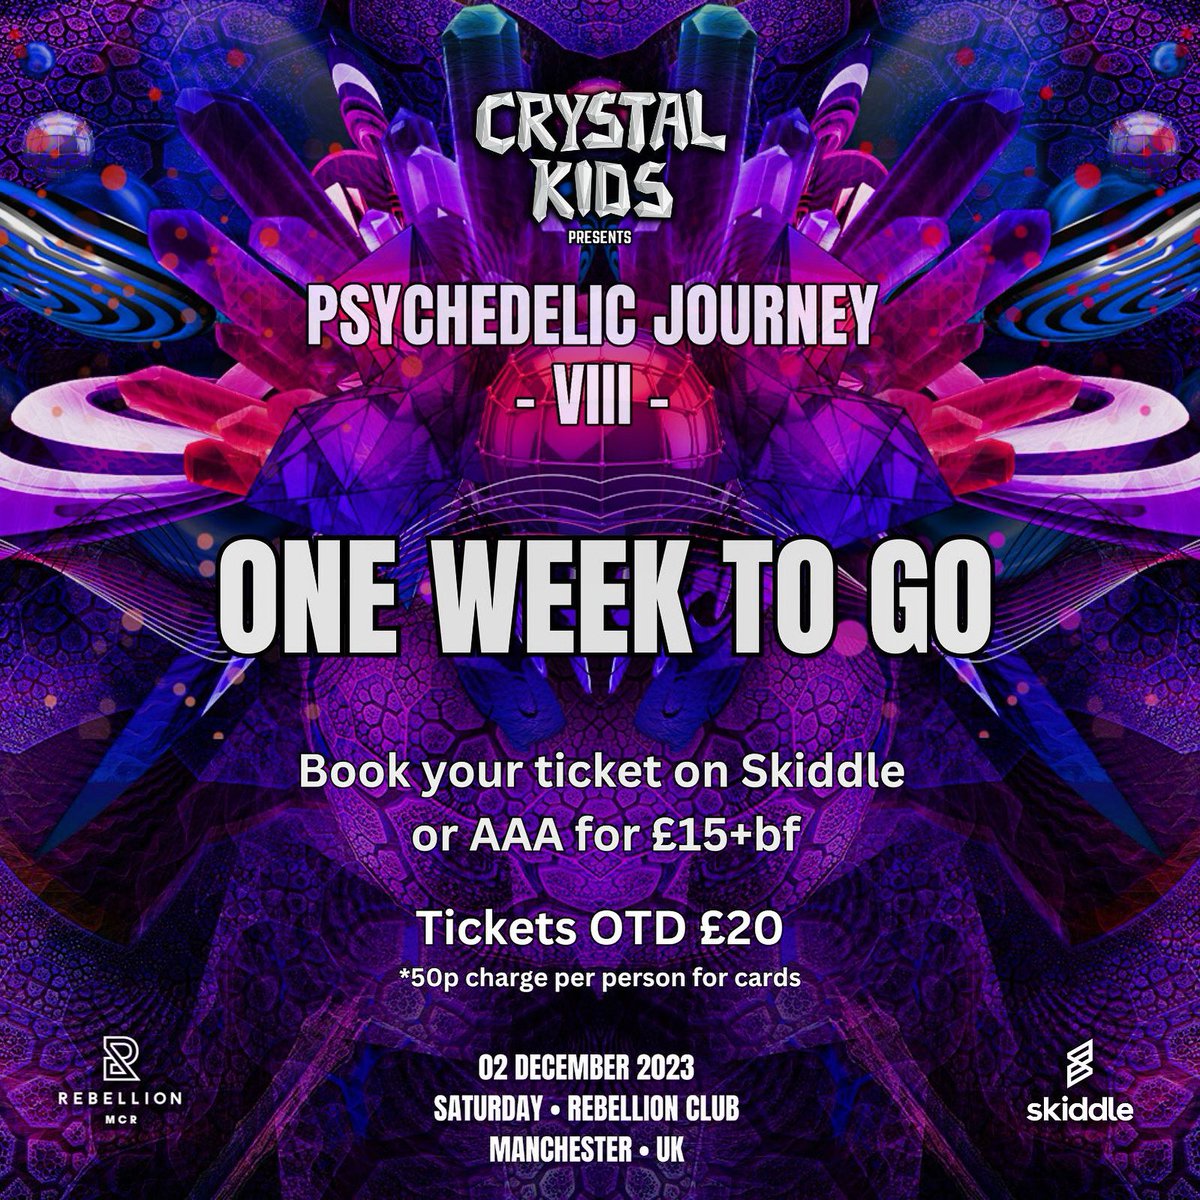 Crystal Kids: Psychedelic Journey VIII
02.12.2023 • Rebellion Manchester
🎫 skiddle.com/e/36252086

#psytrance #psytranceuk #psytranceparty #psytrancemusic #psytranceculture #psytrancelove #manchesternightlife #manchesternights #manchesternightout